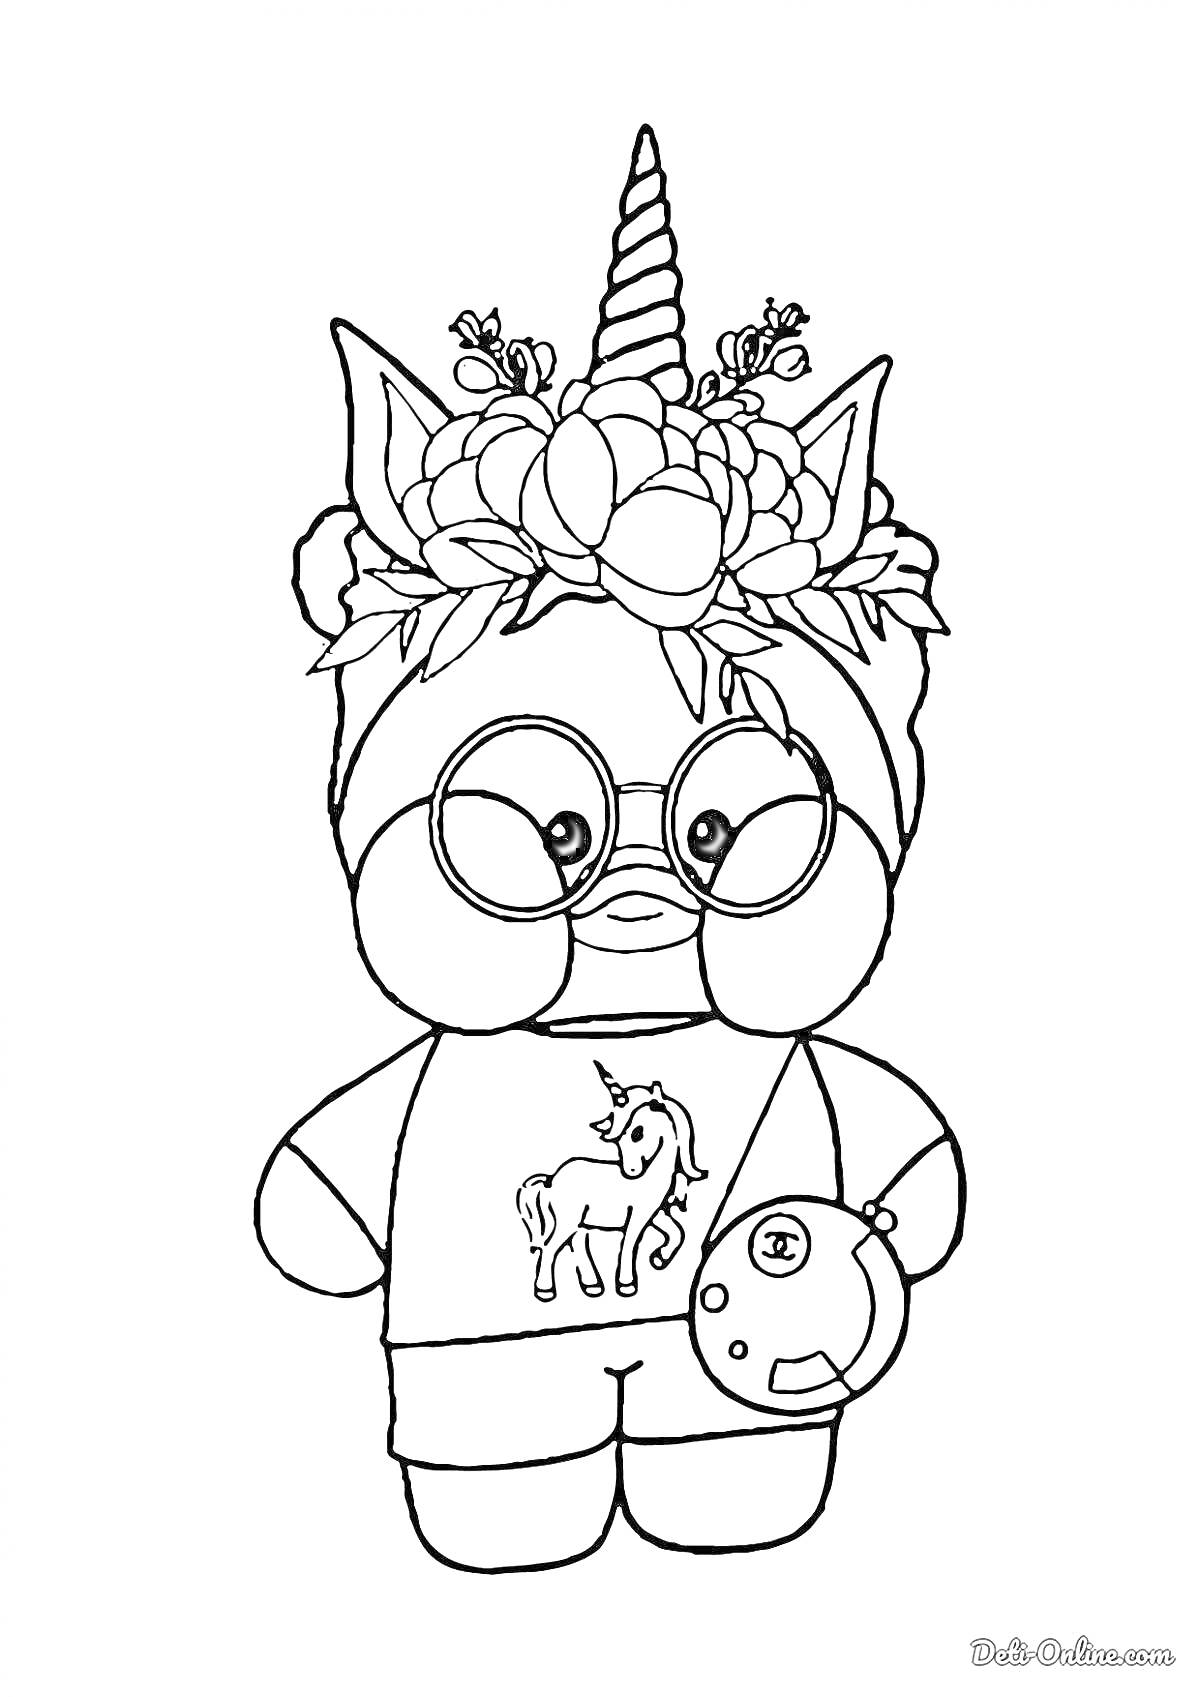 Раскраска Лалафанфан с цветочным ободком и рогом, в очках, футболке с единорогом, с сумкой через плечо